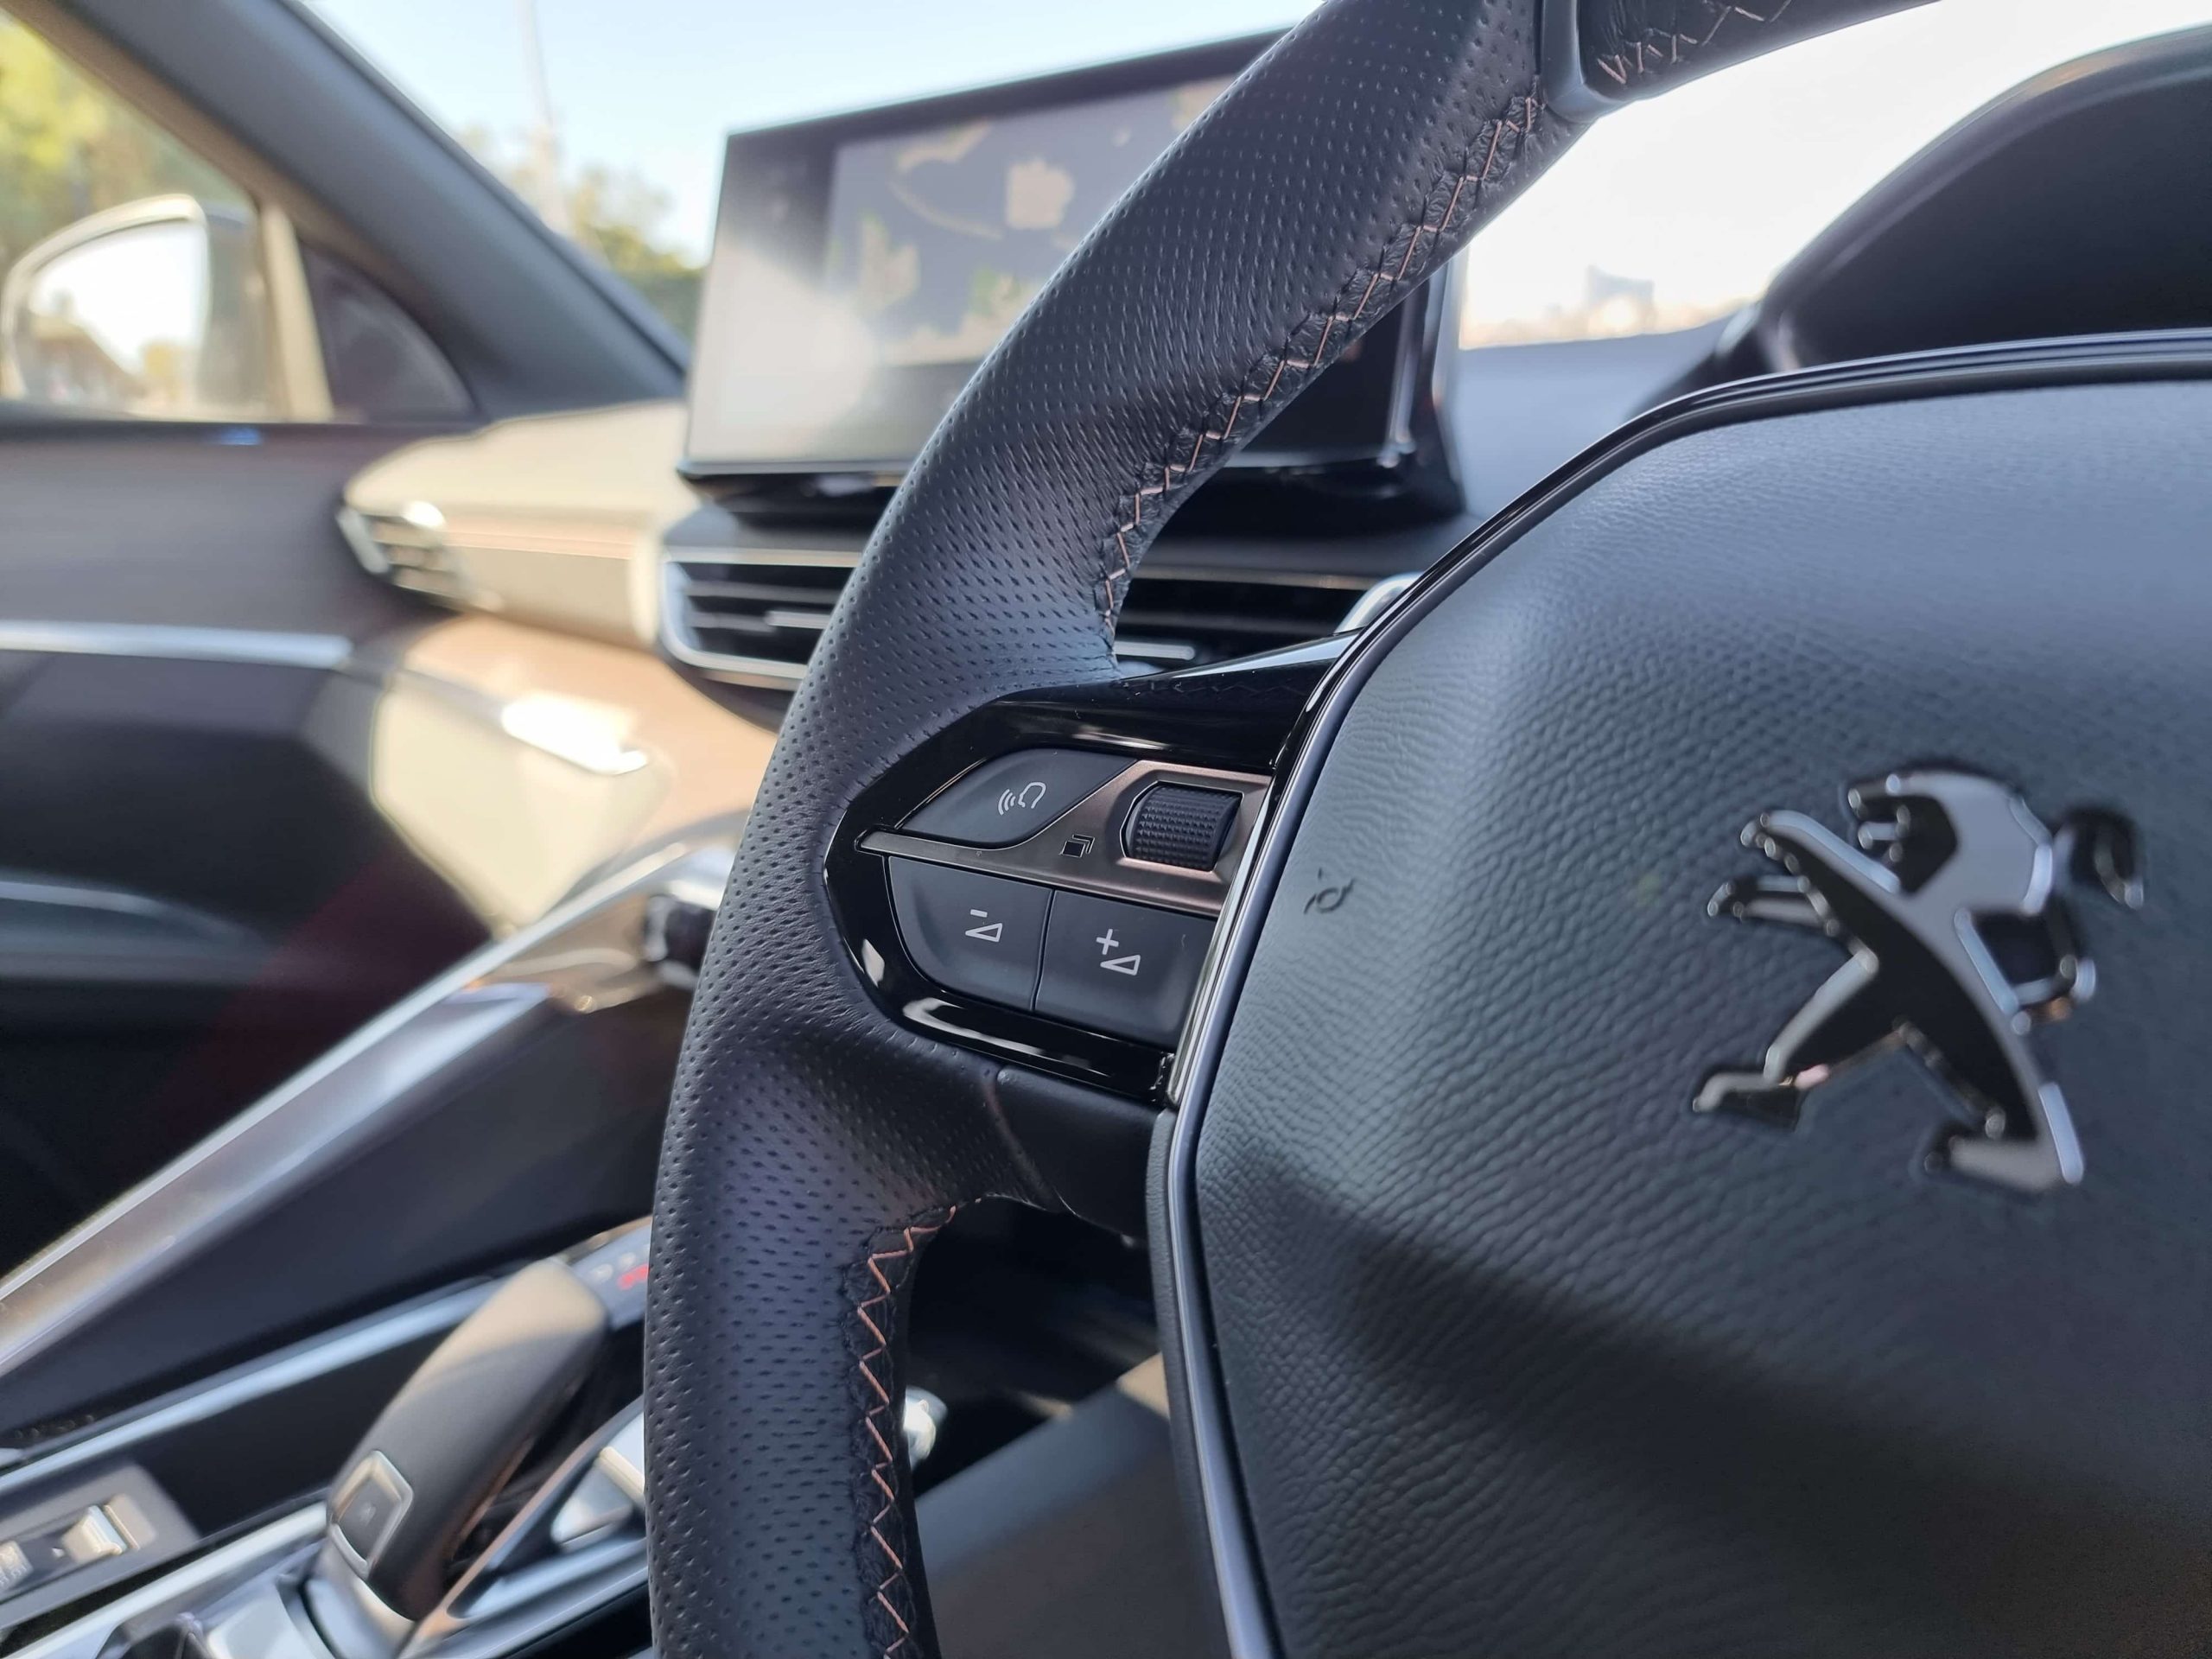 2021 Peugeot 5008 interior